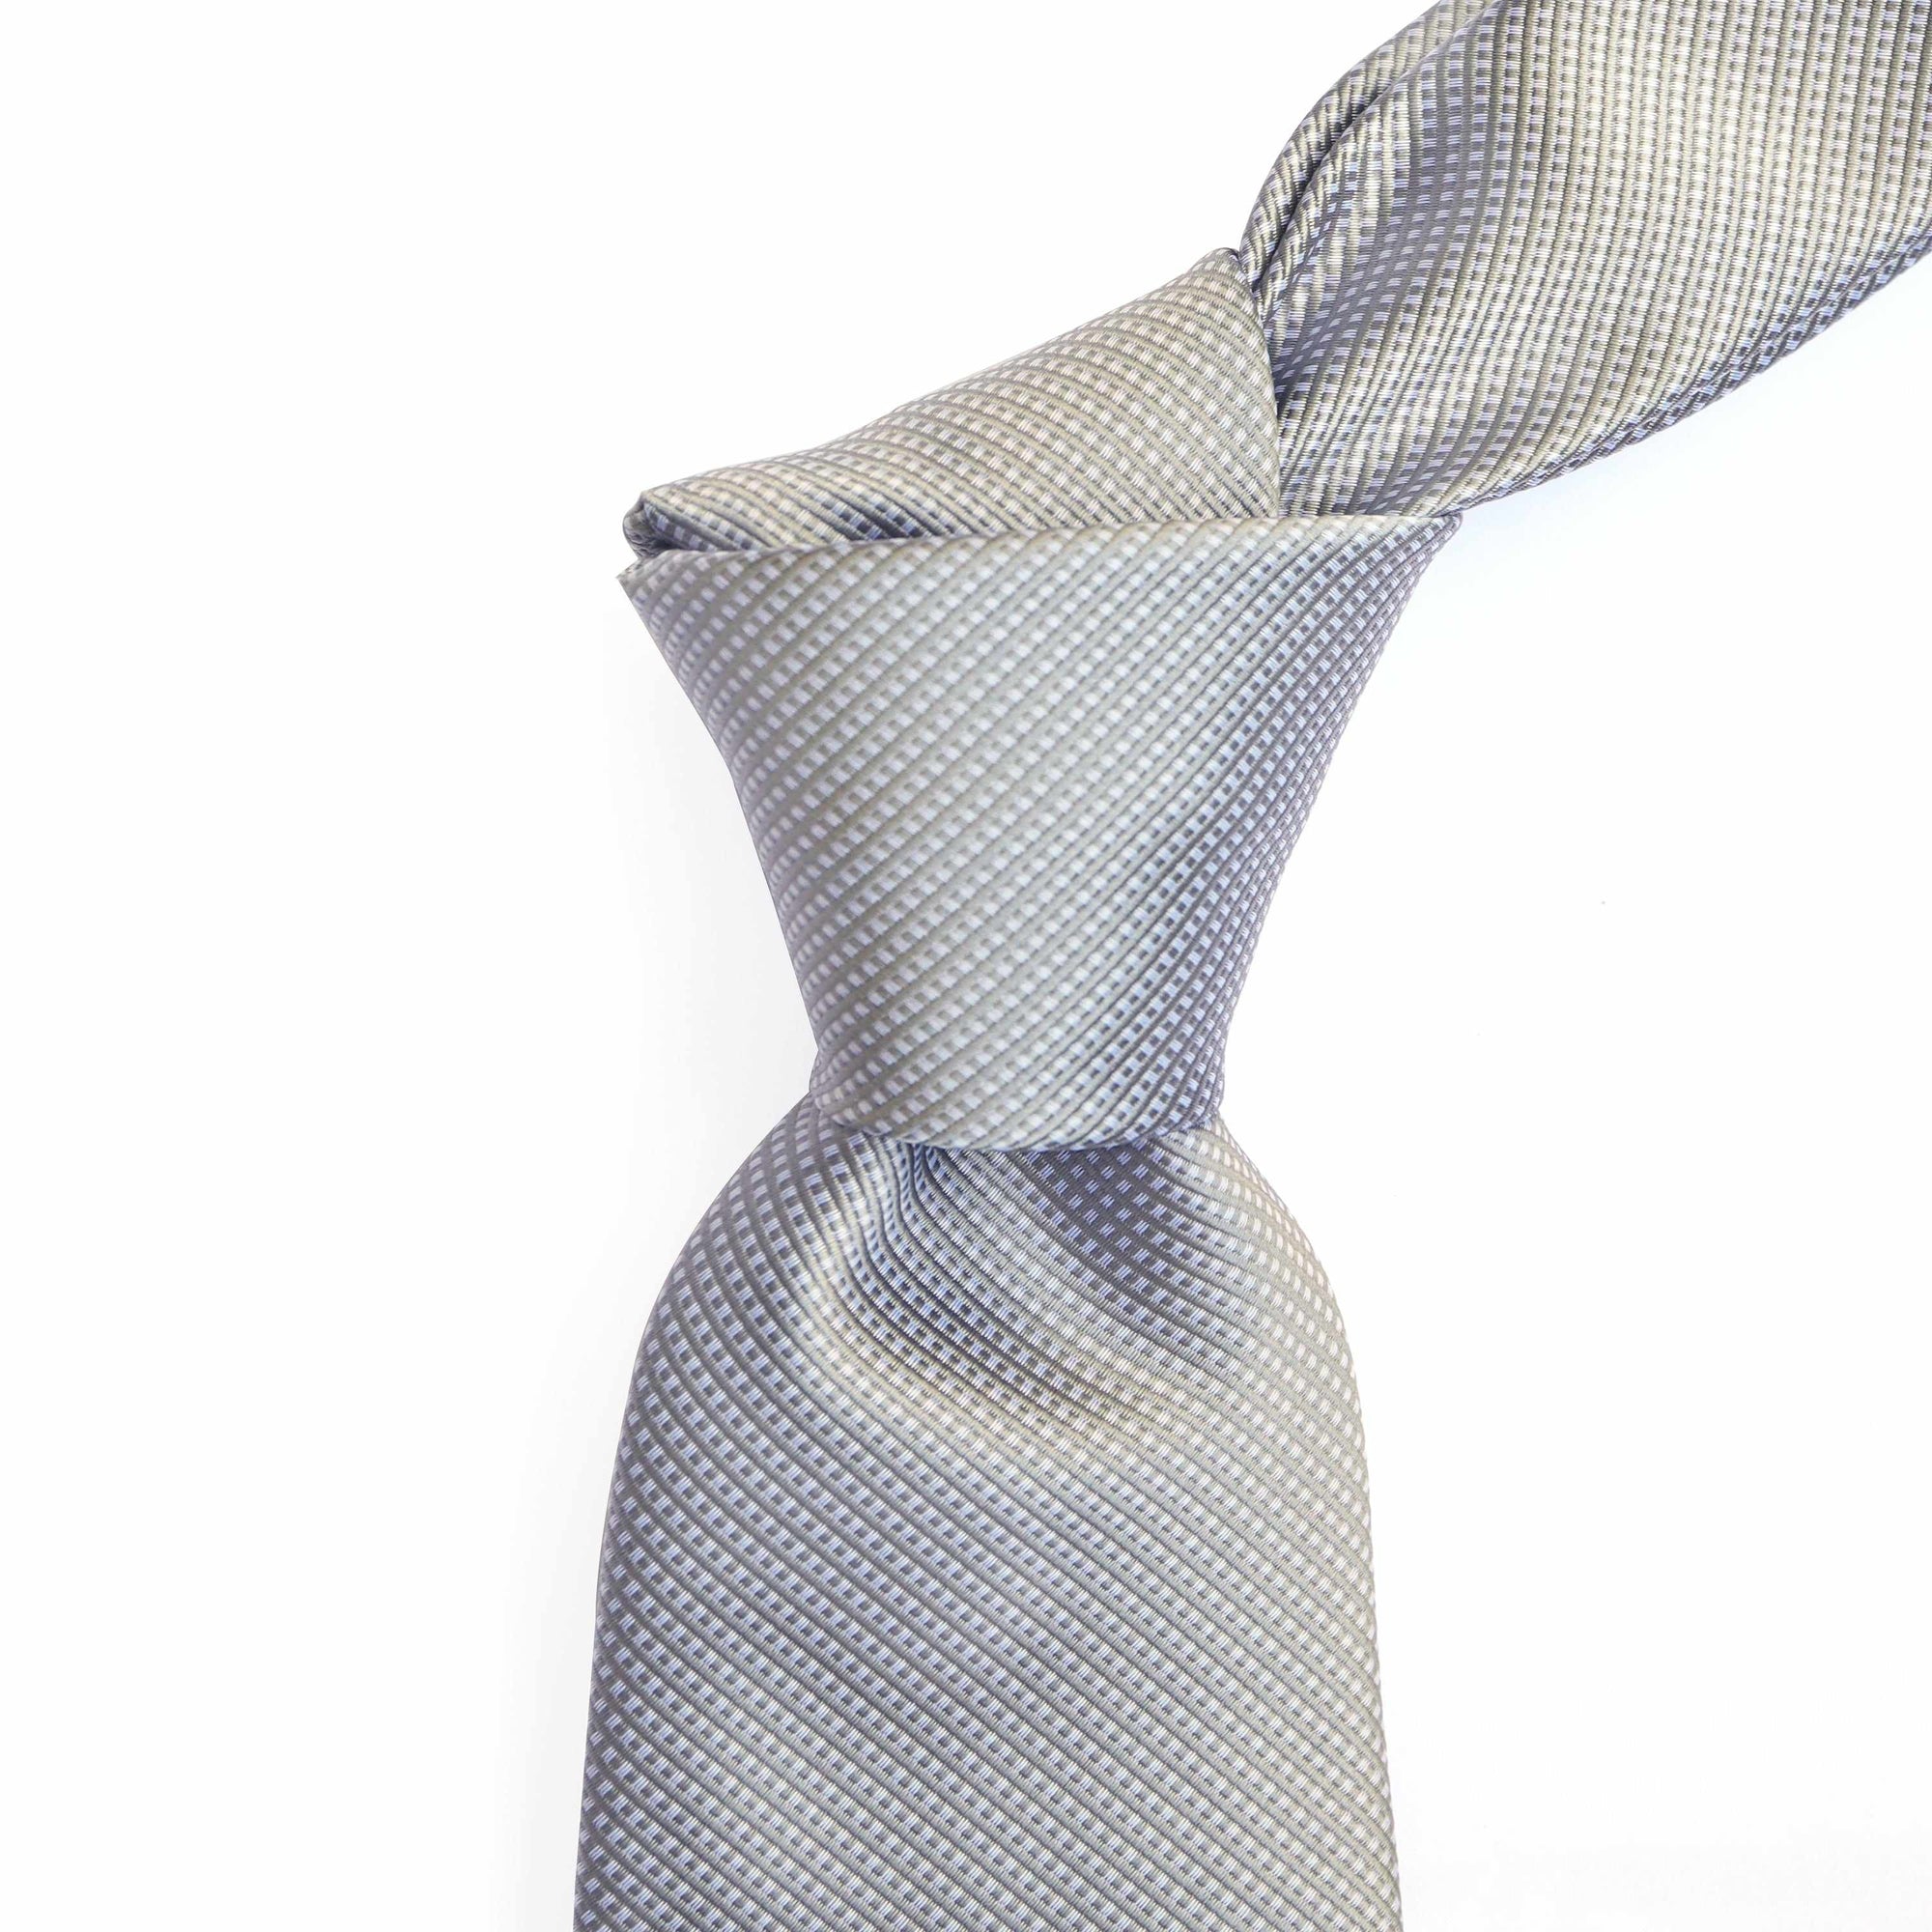 Orobianco L'unique Classic Woven Necktie D204-Cufflinks.com.sg | Neckties.com.sg